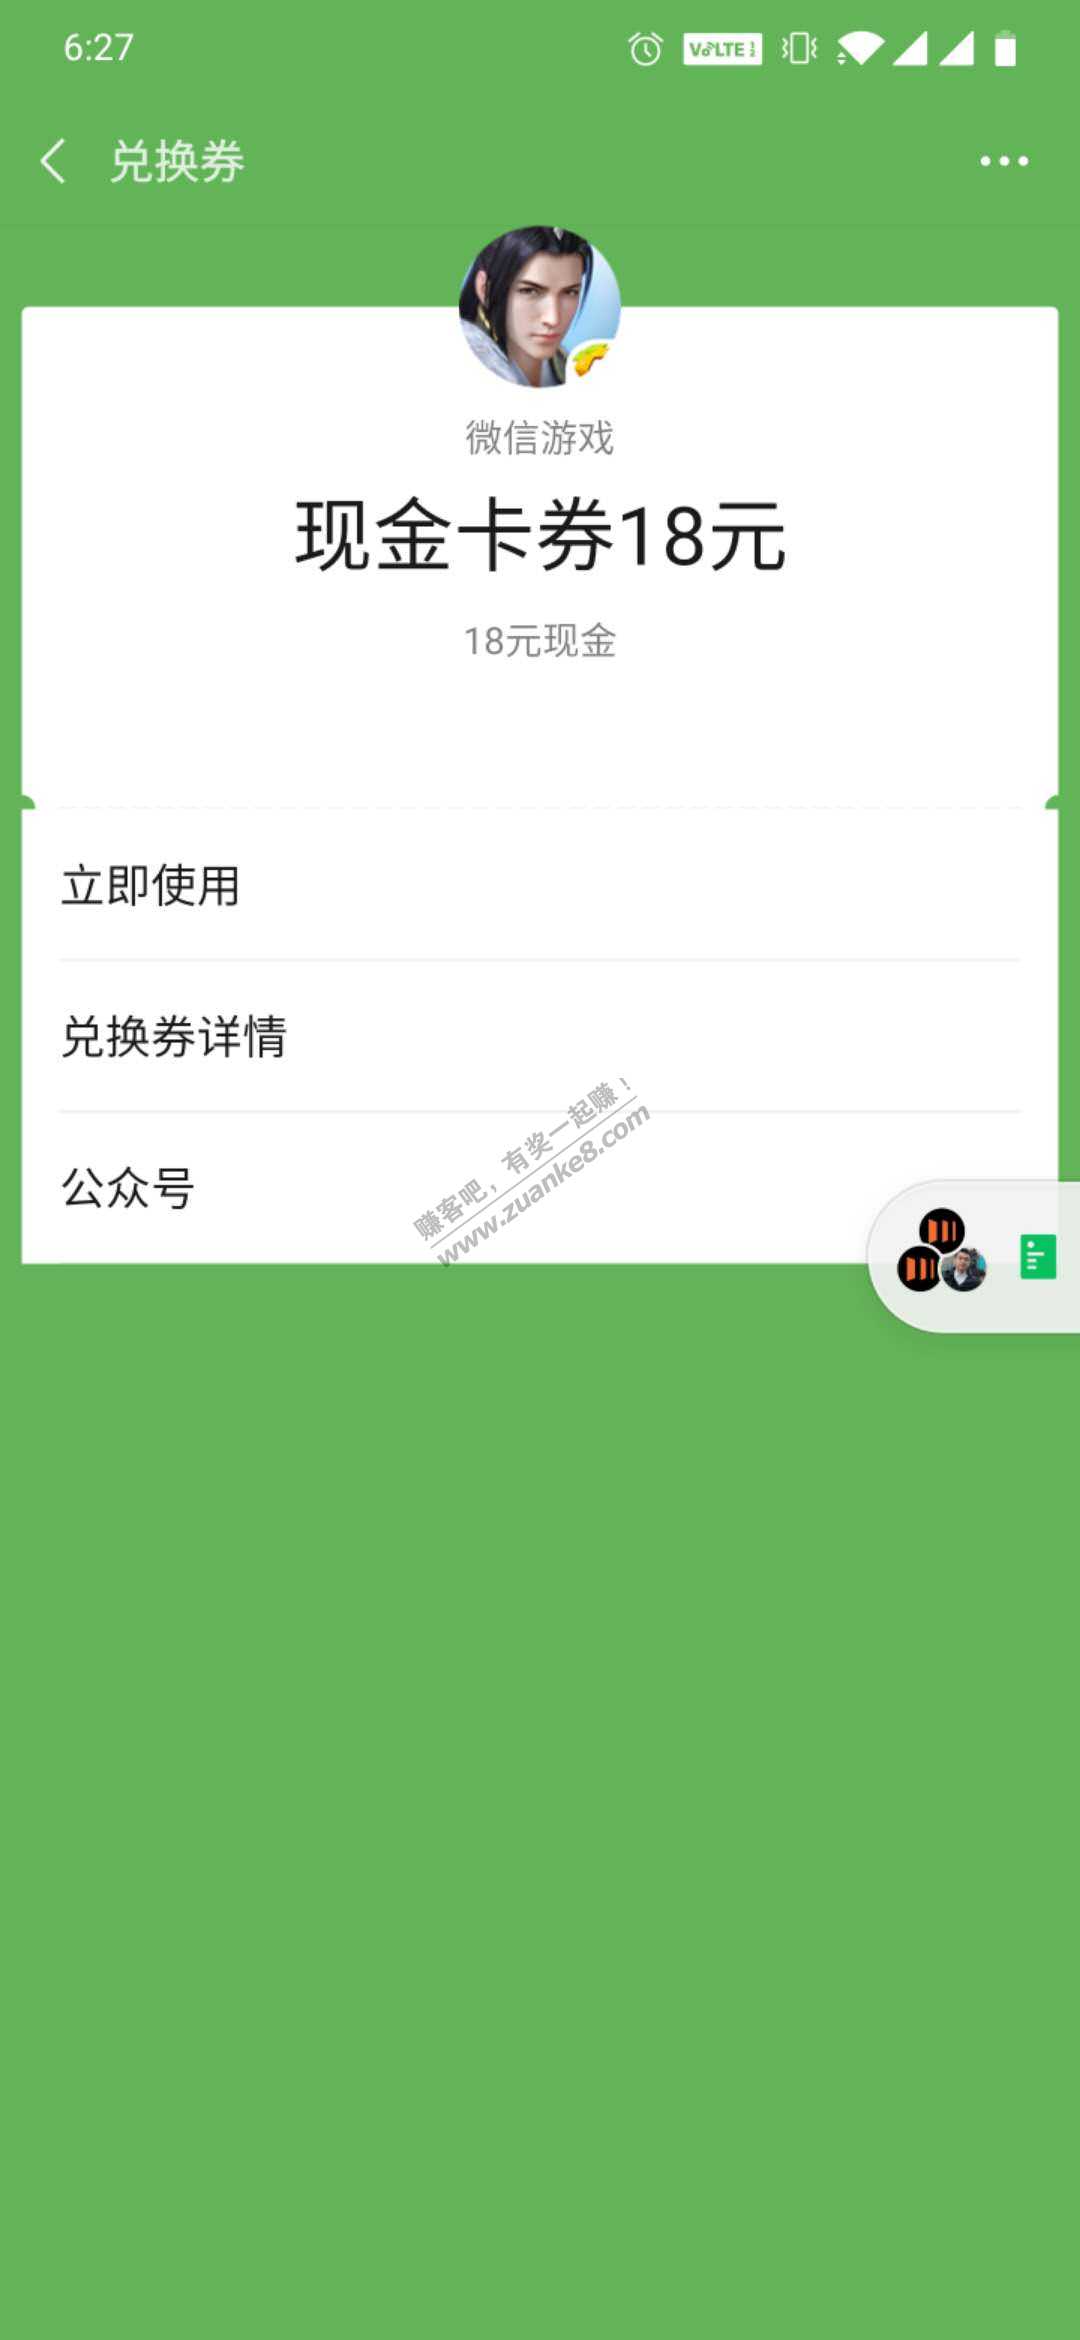 微信游戏预约红包-中18-惠小助(52huixz.com)